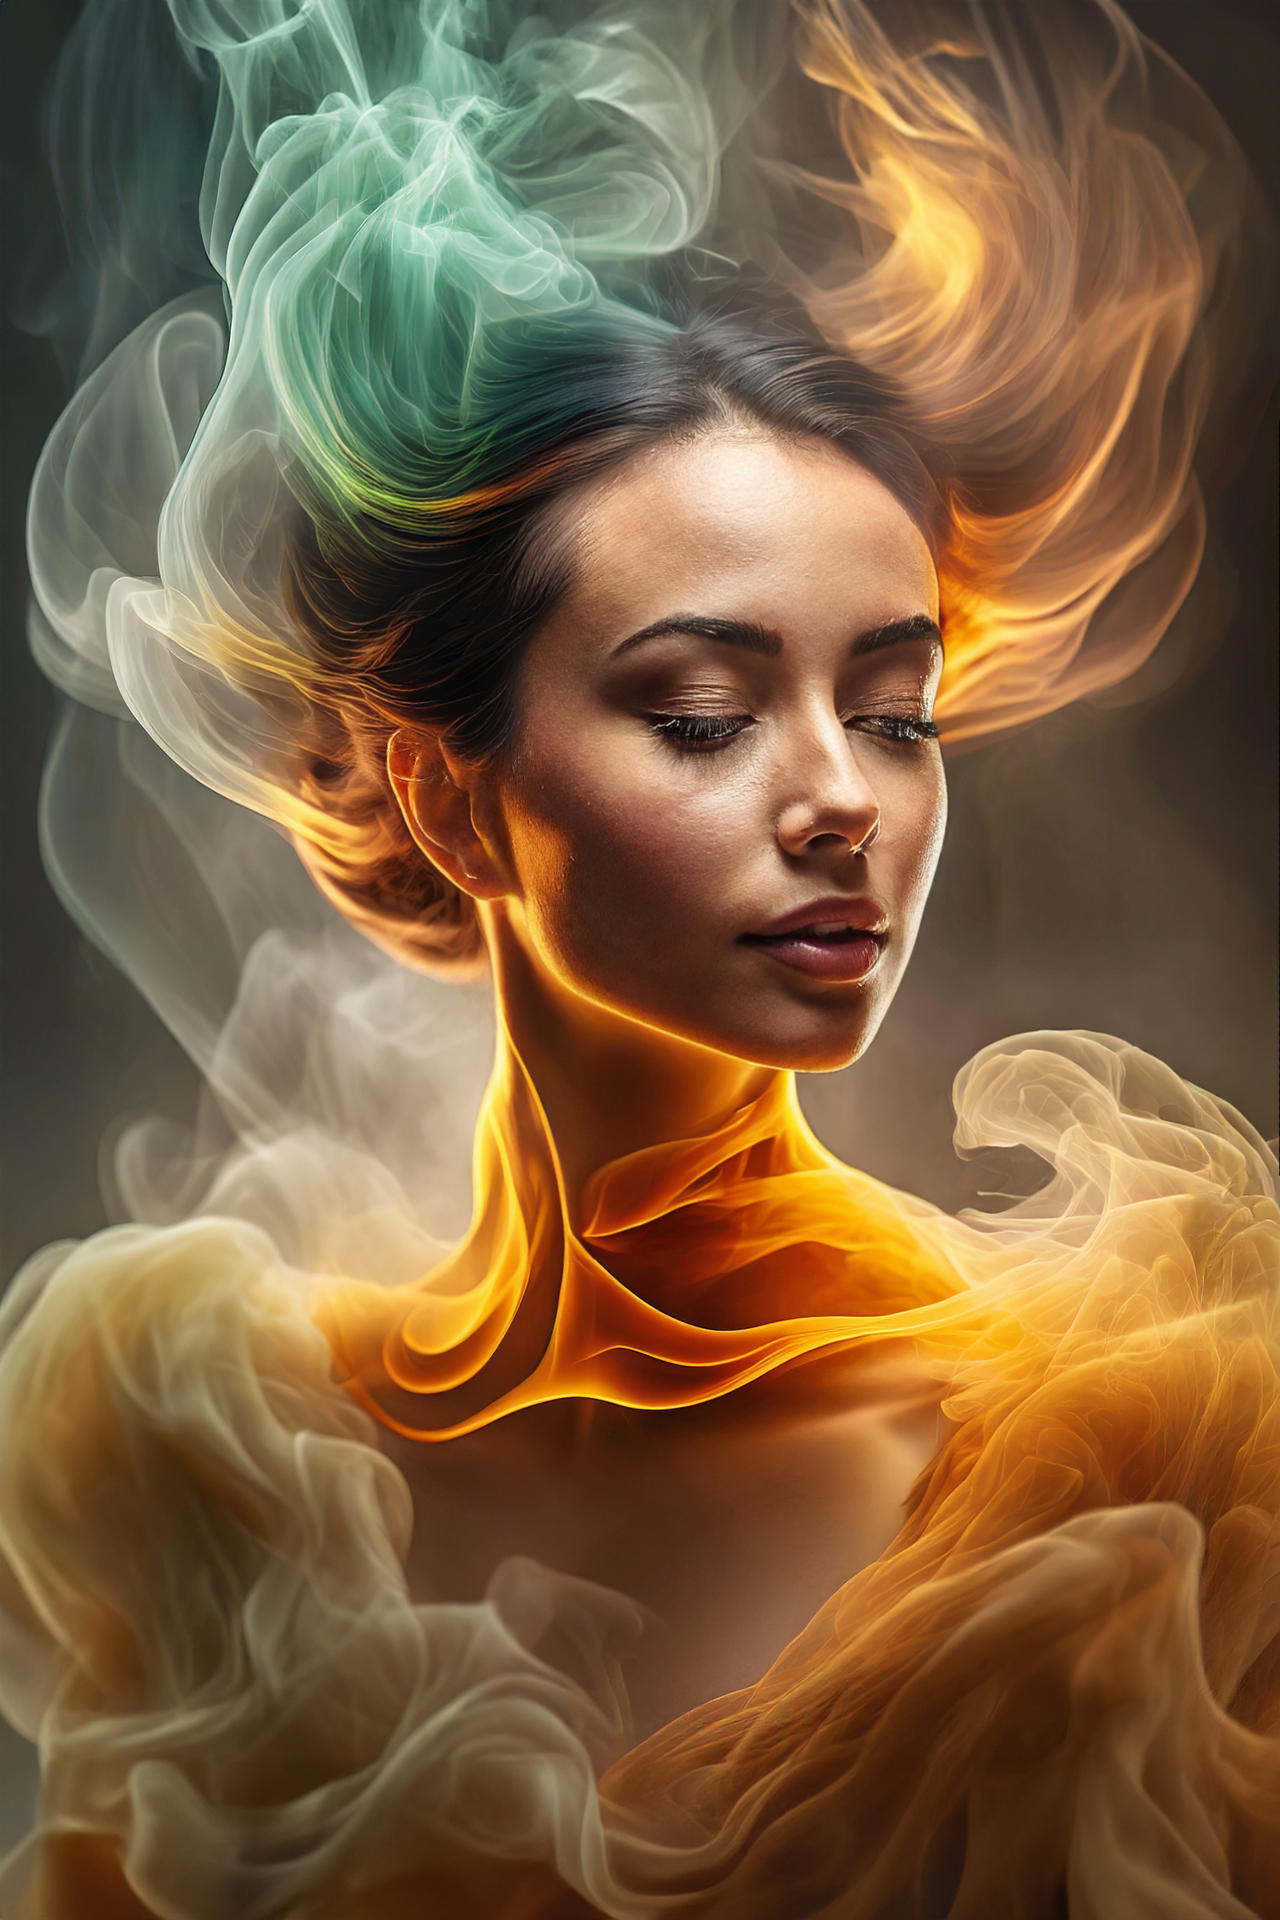 Fire Elemental 5 by koalakoker on DeviantArt